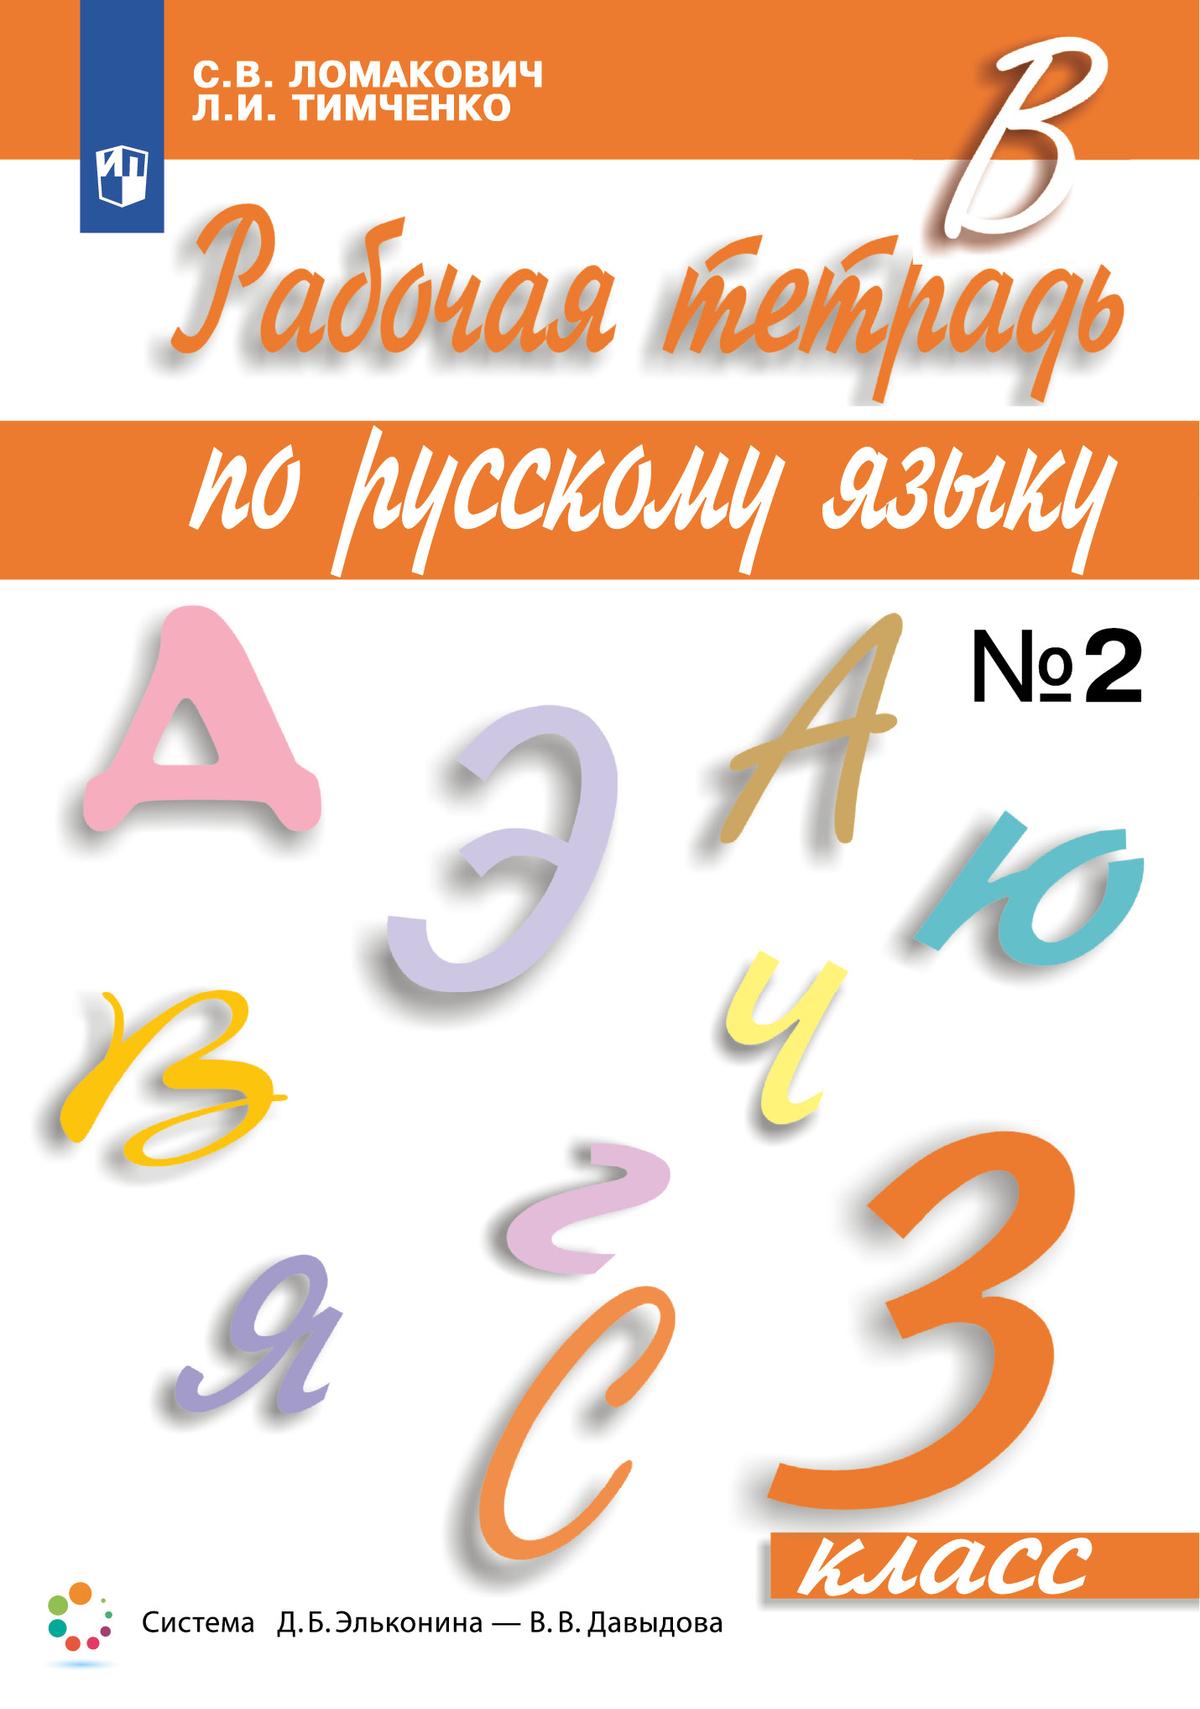 Рабочая тетрадь по русскому языку. 3 класс. В 2 частях. Часть 2 1